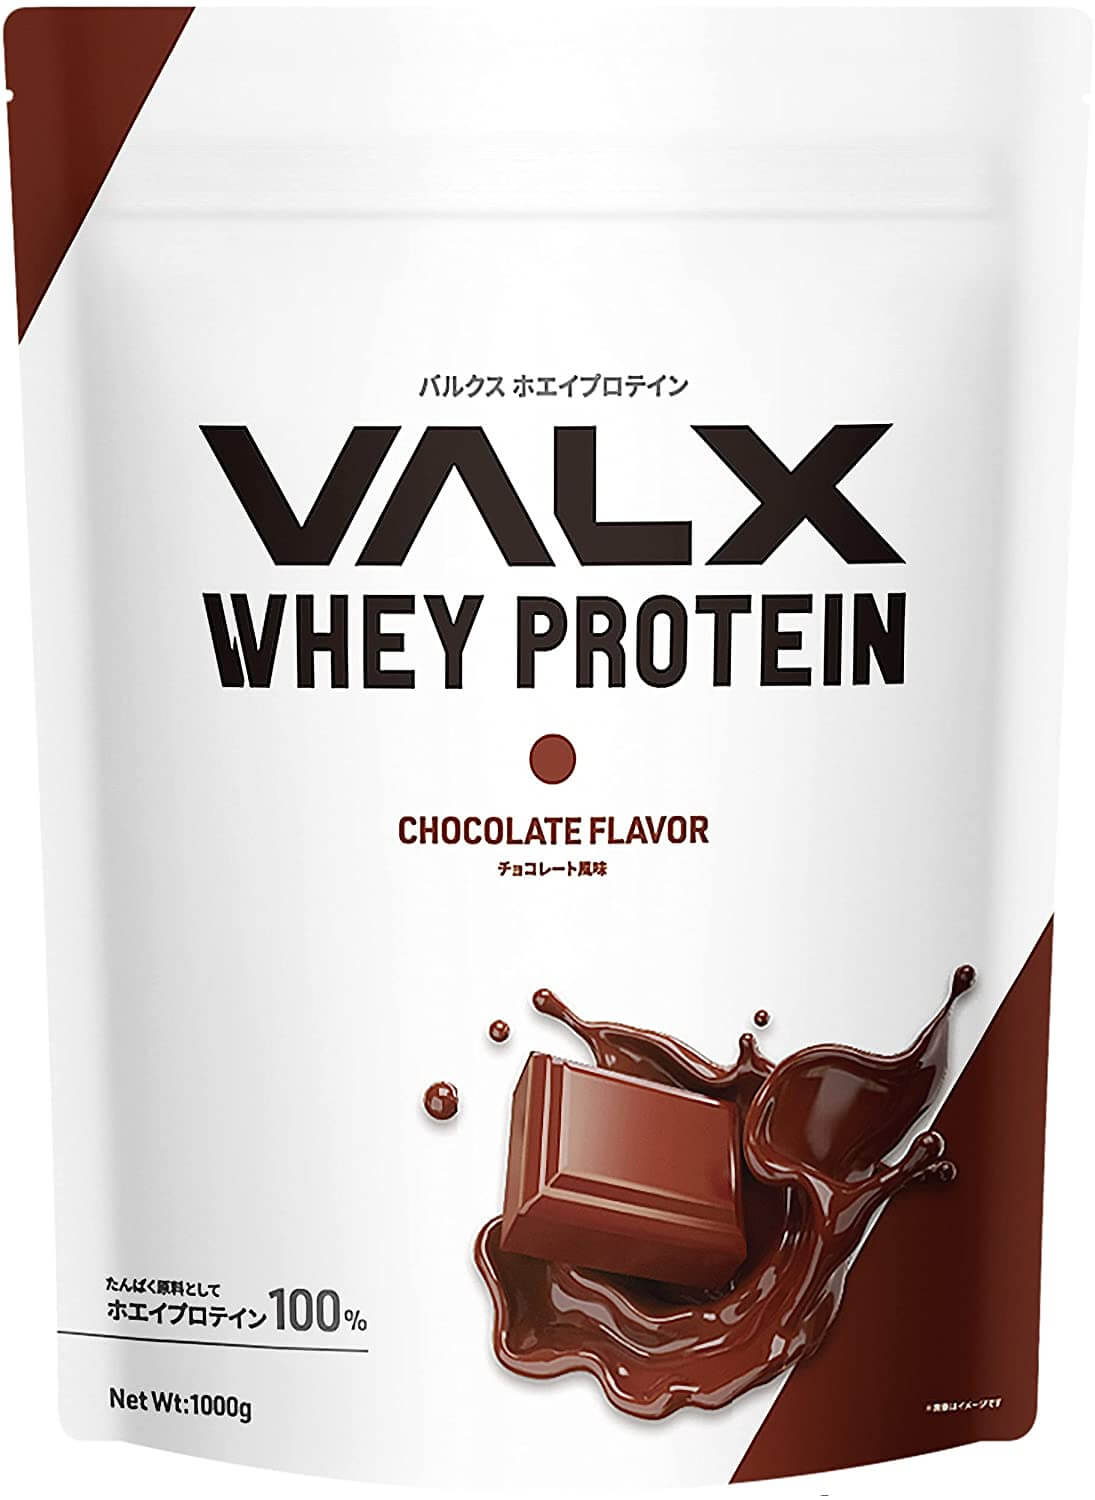 チョコ味で美味しい、飲みやすいオススメのプロテイン「VALX バルクス ホエイ プロテイン チョコレート風味」